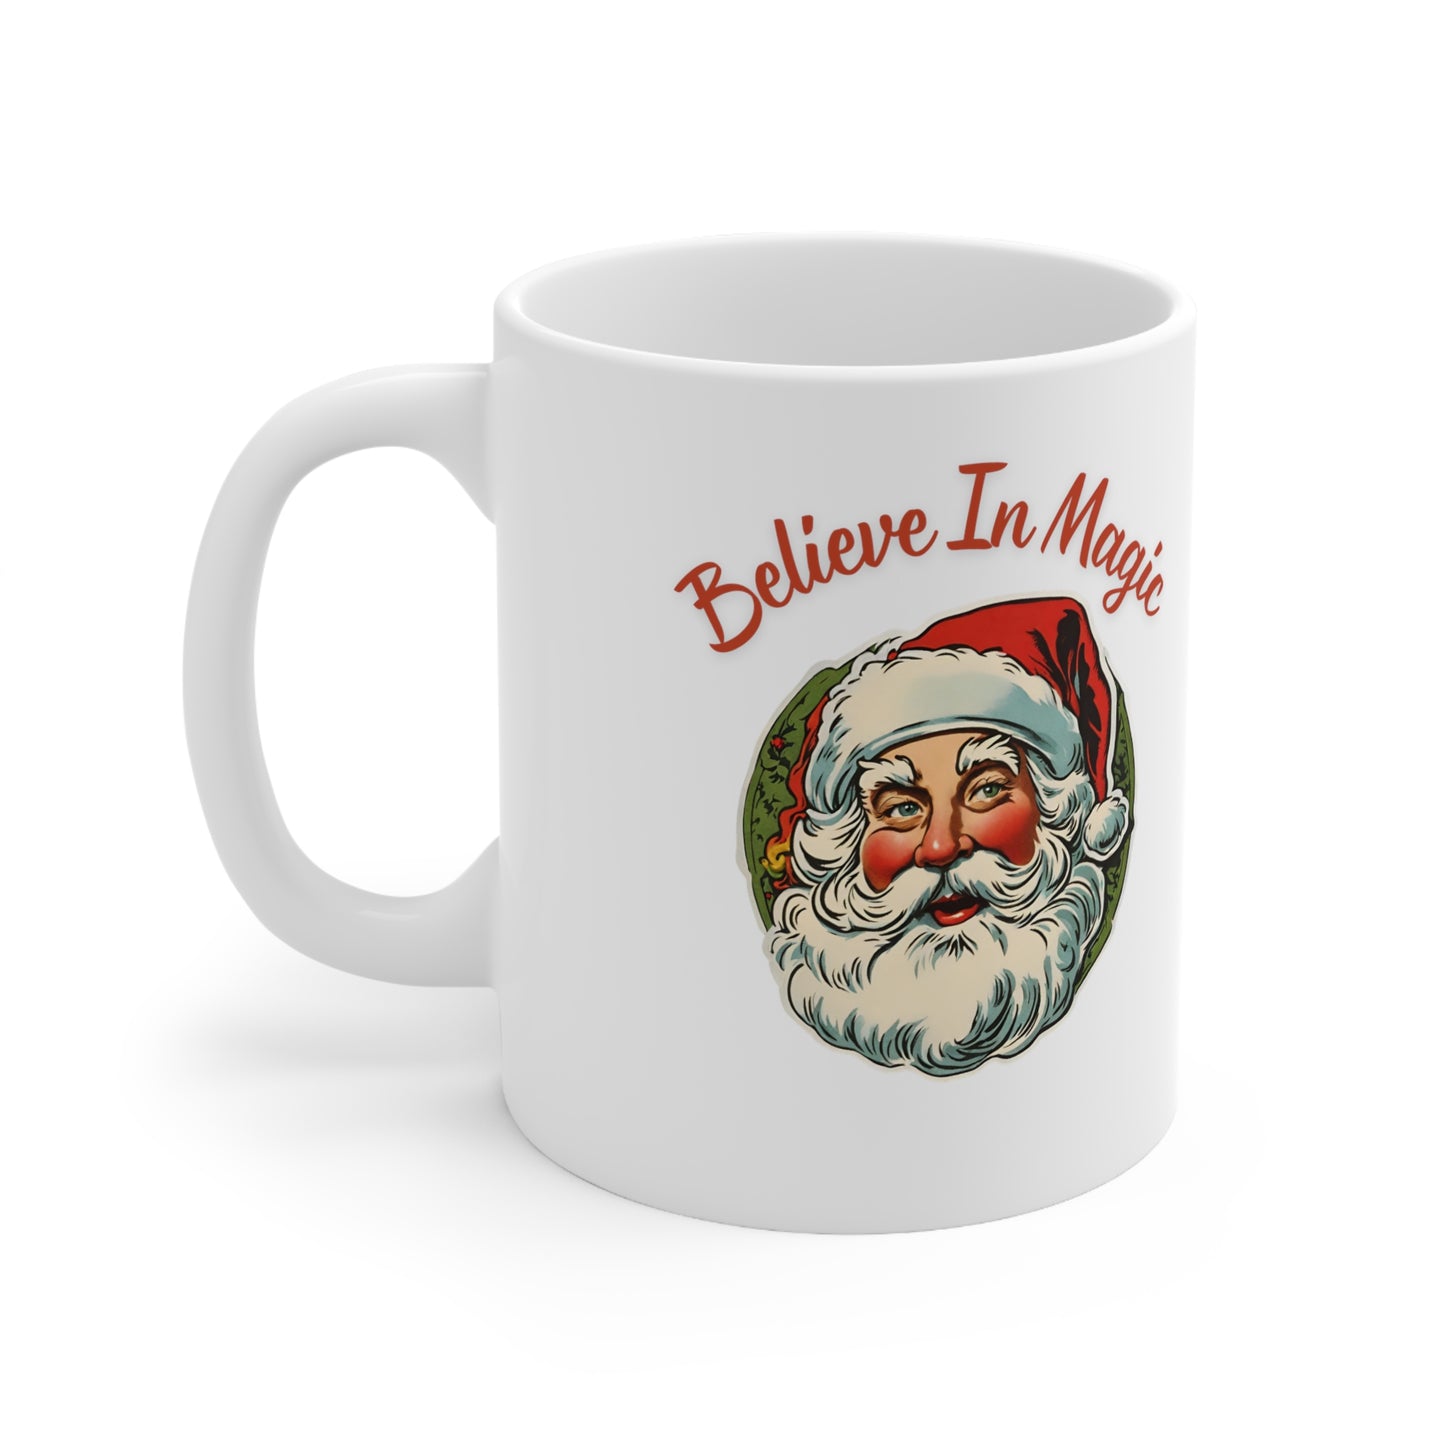 Believe In Magic - Ceramic Mug 11oz, Christmas Mug, Holiday Gift